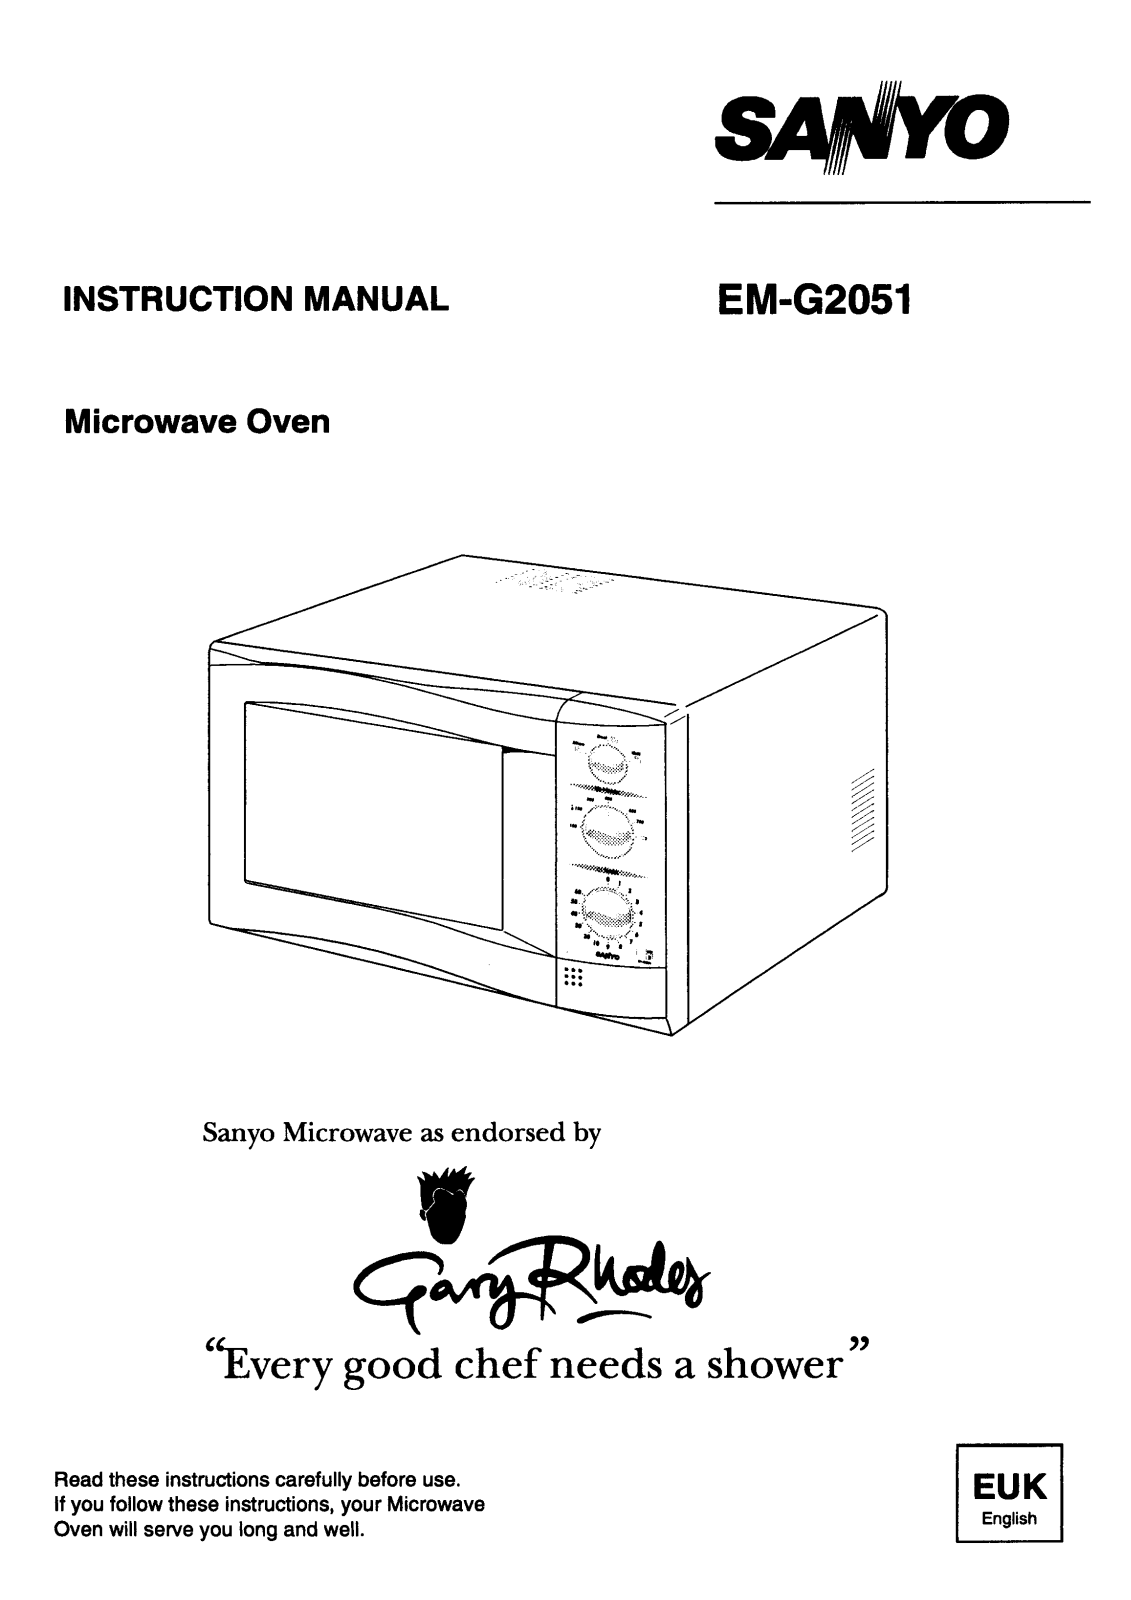 Sanyo EM-G2051 Instruction Manual